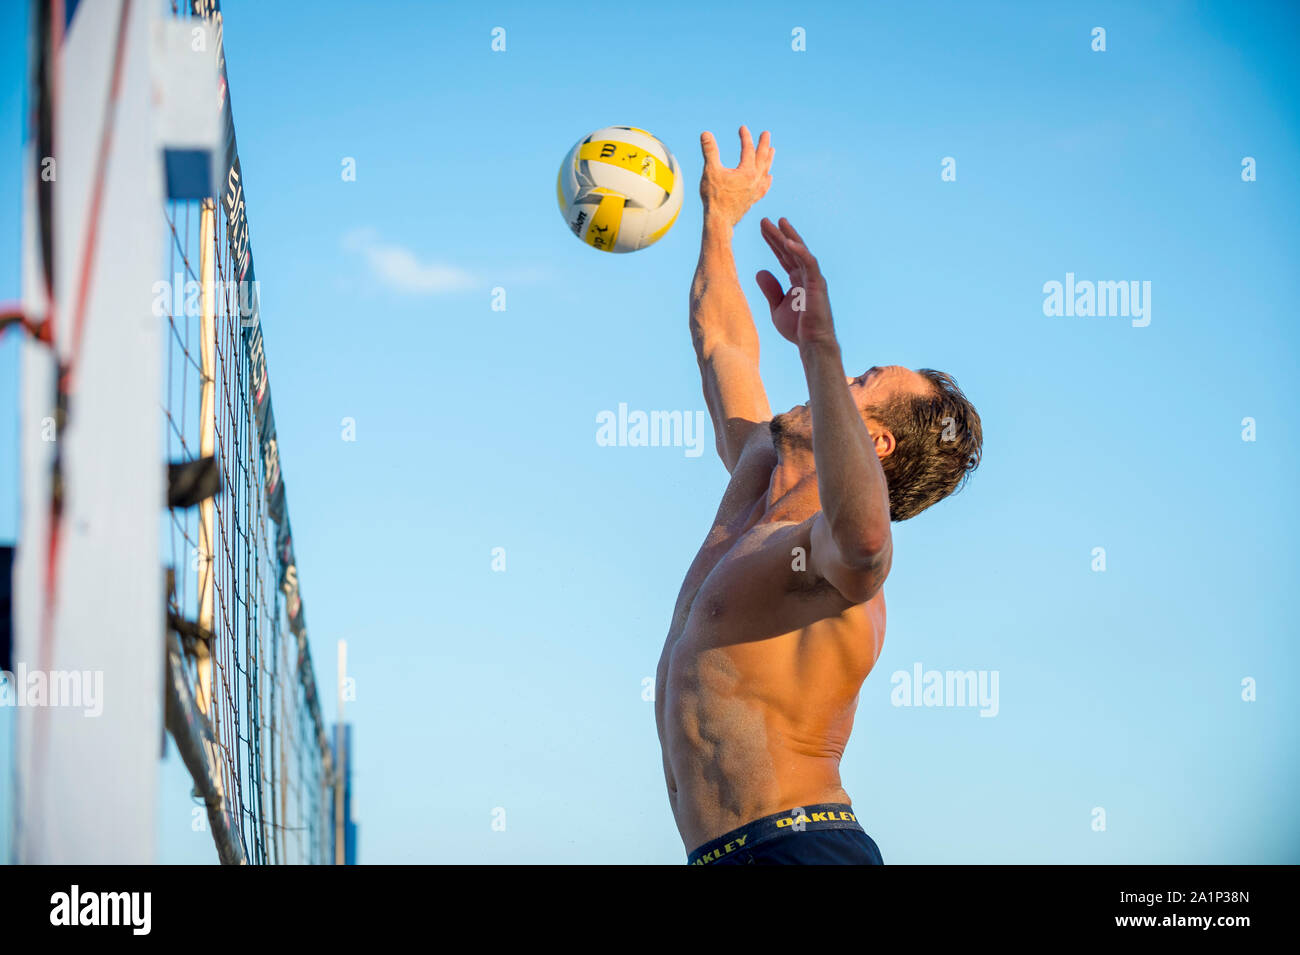 MIAMI - Dezember 29, 2017: Ein junger Mann spielt eine informelle Runde Volleyball in South Beach. Stockfoto